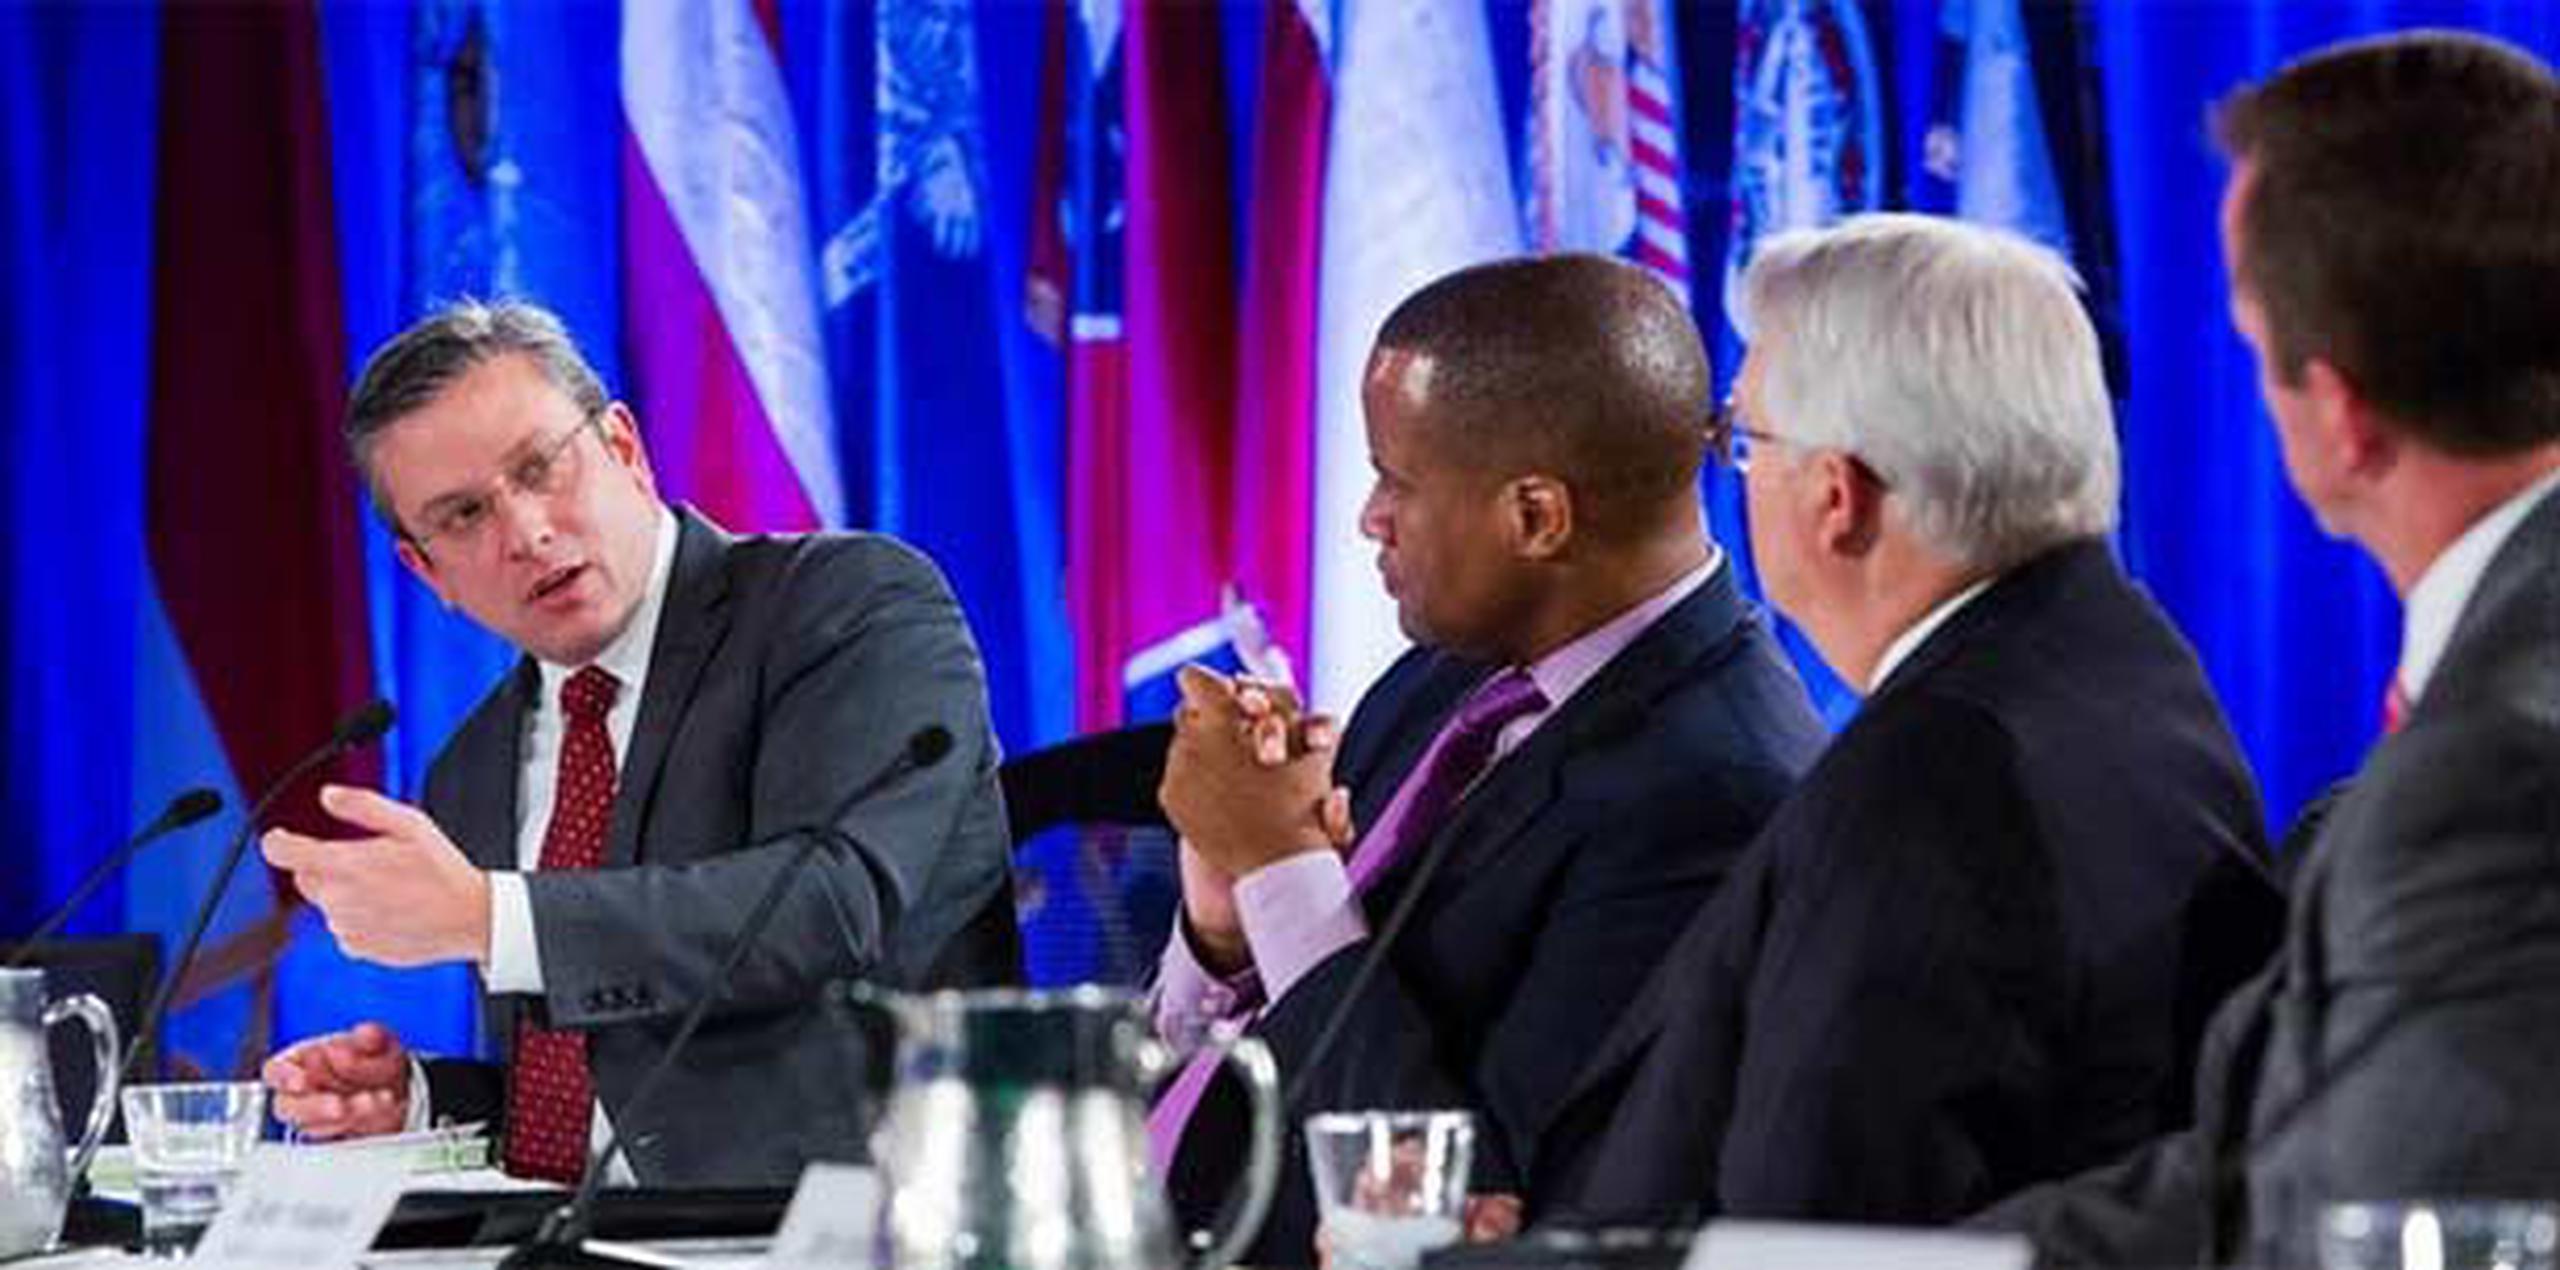 En la capital federal, la agenda de García Padilla incluye reuniones con funcionarios del Gobierno de Obama para discutir temas relacionados con desarrollo económico, finanzas, seguridad y energía. (Twitter)